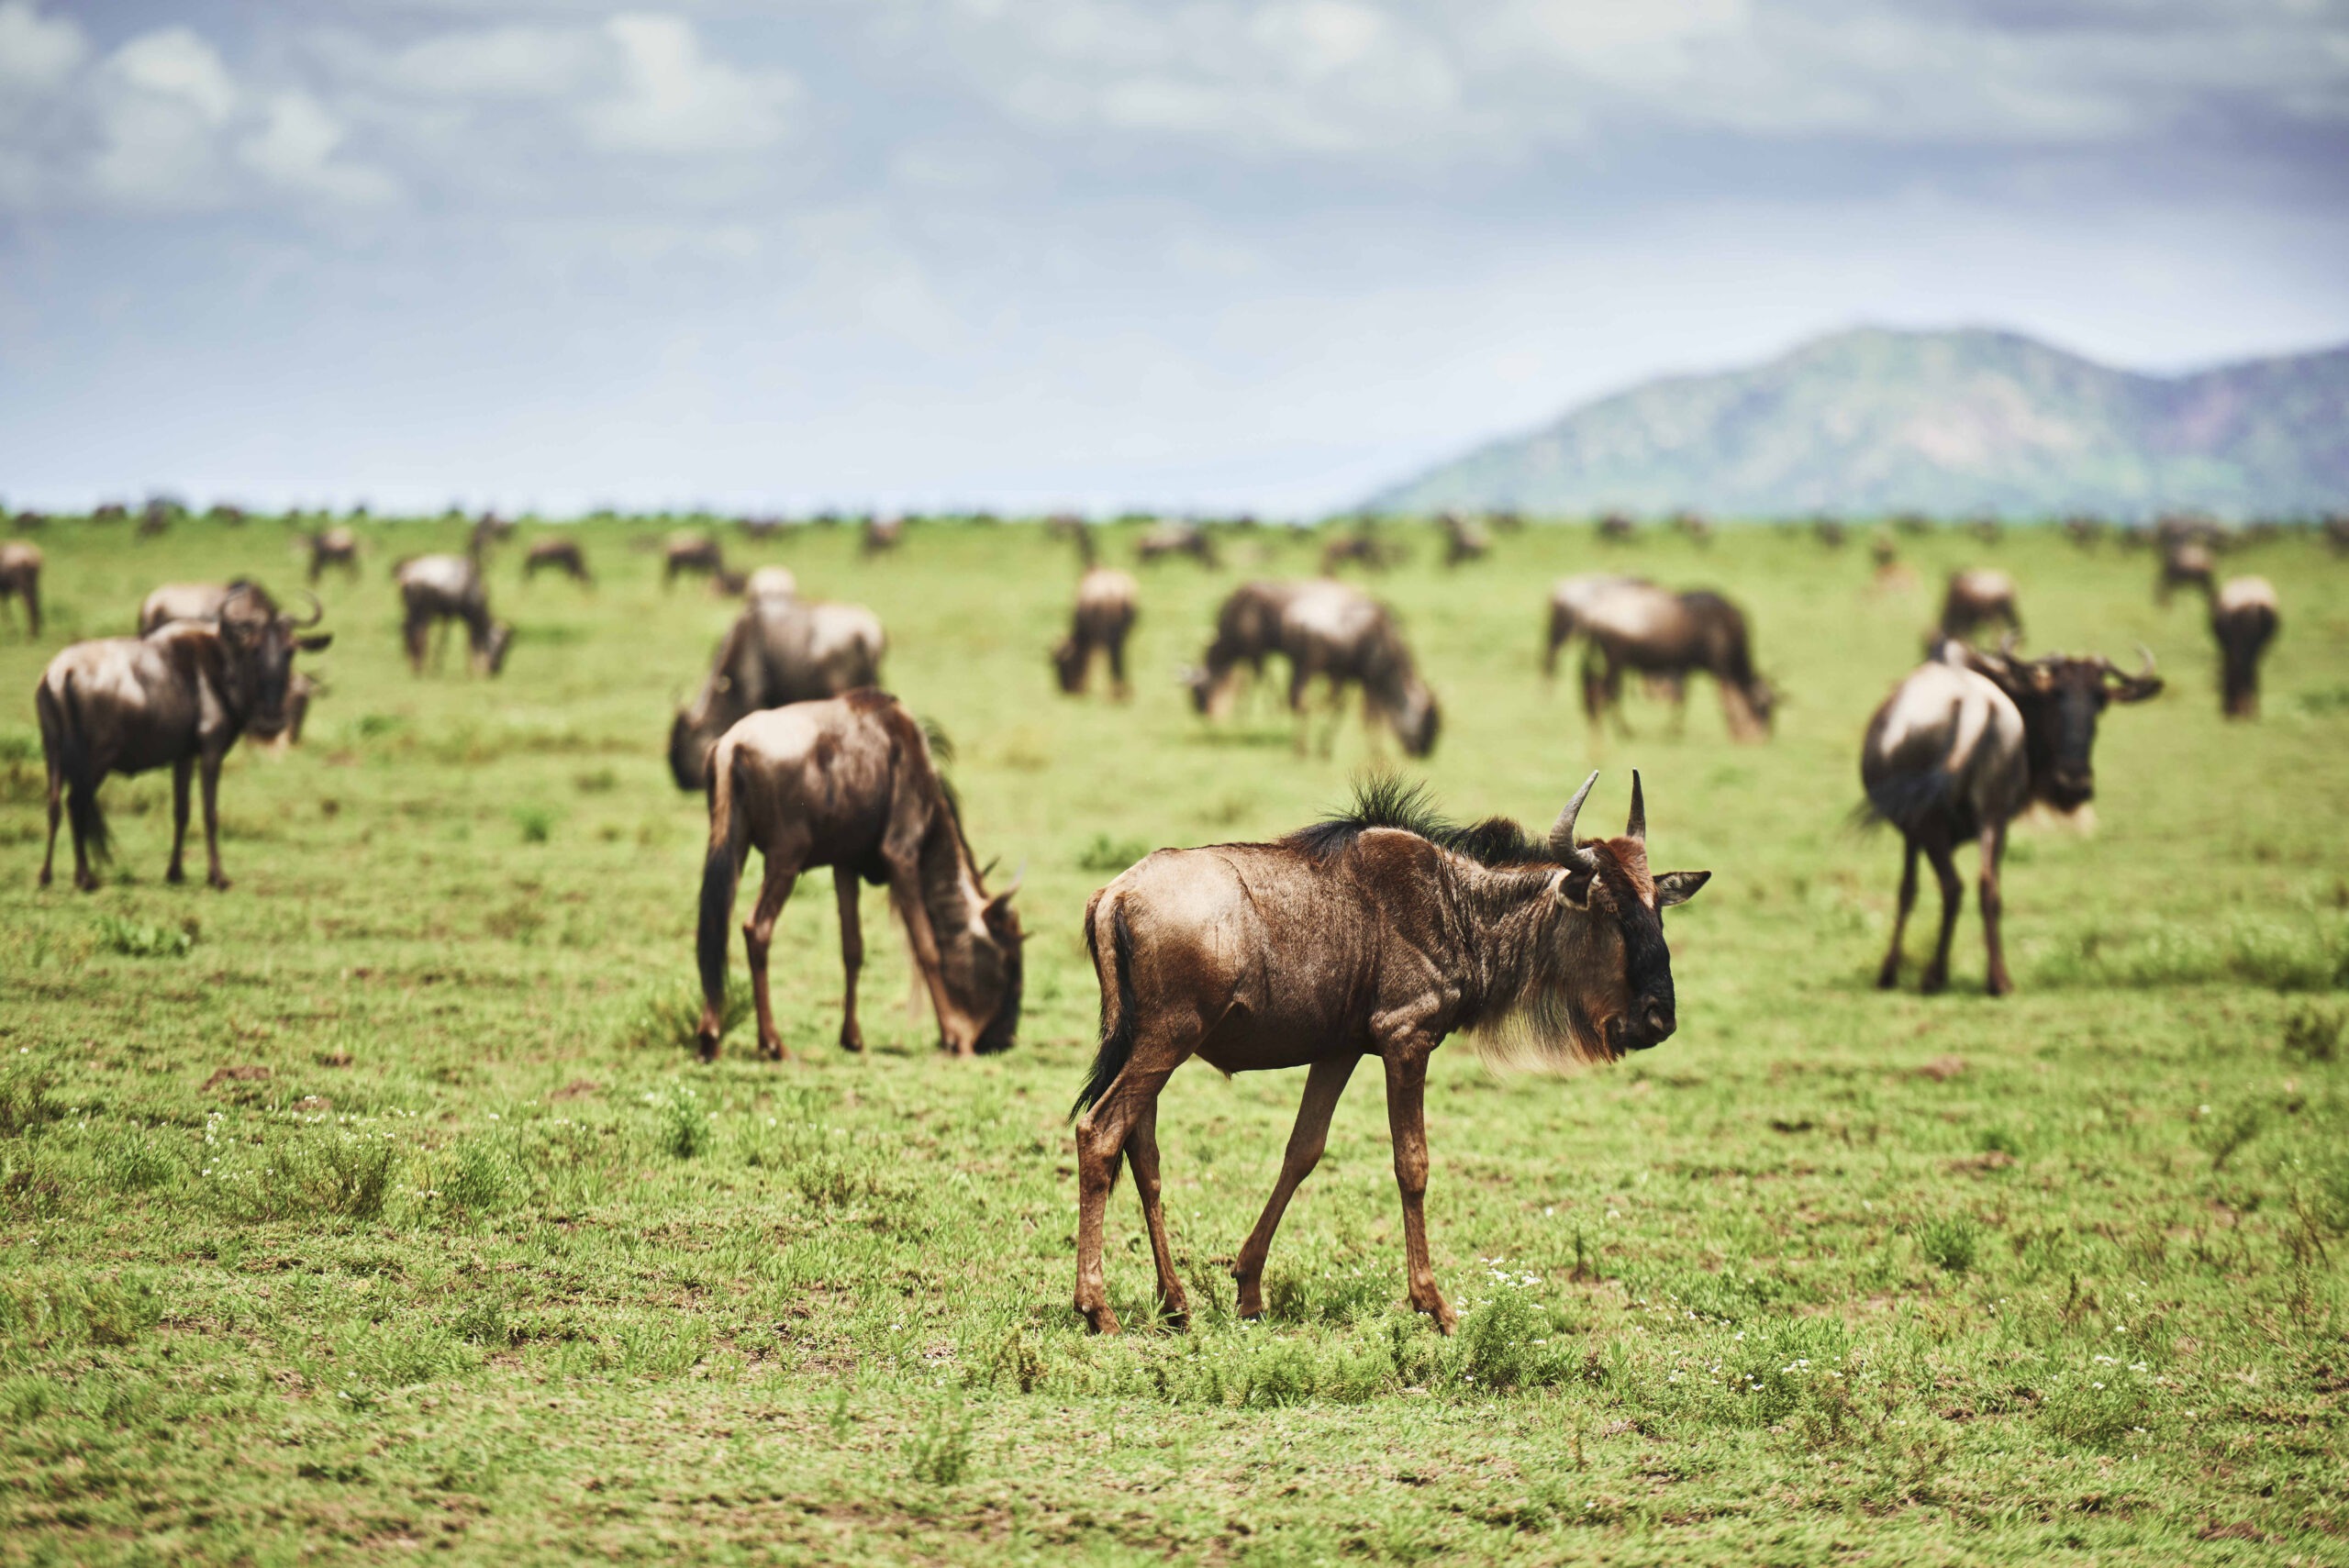 a-herd-of-wildebeests-in-africa-2023-11-27-05-35-16-utc-2